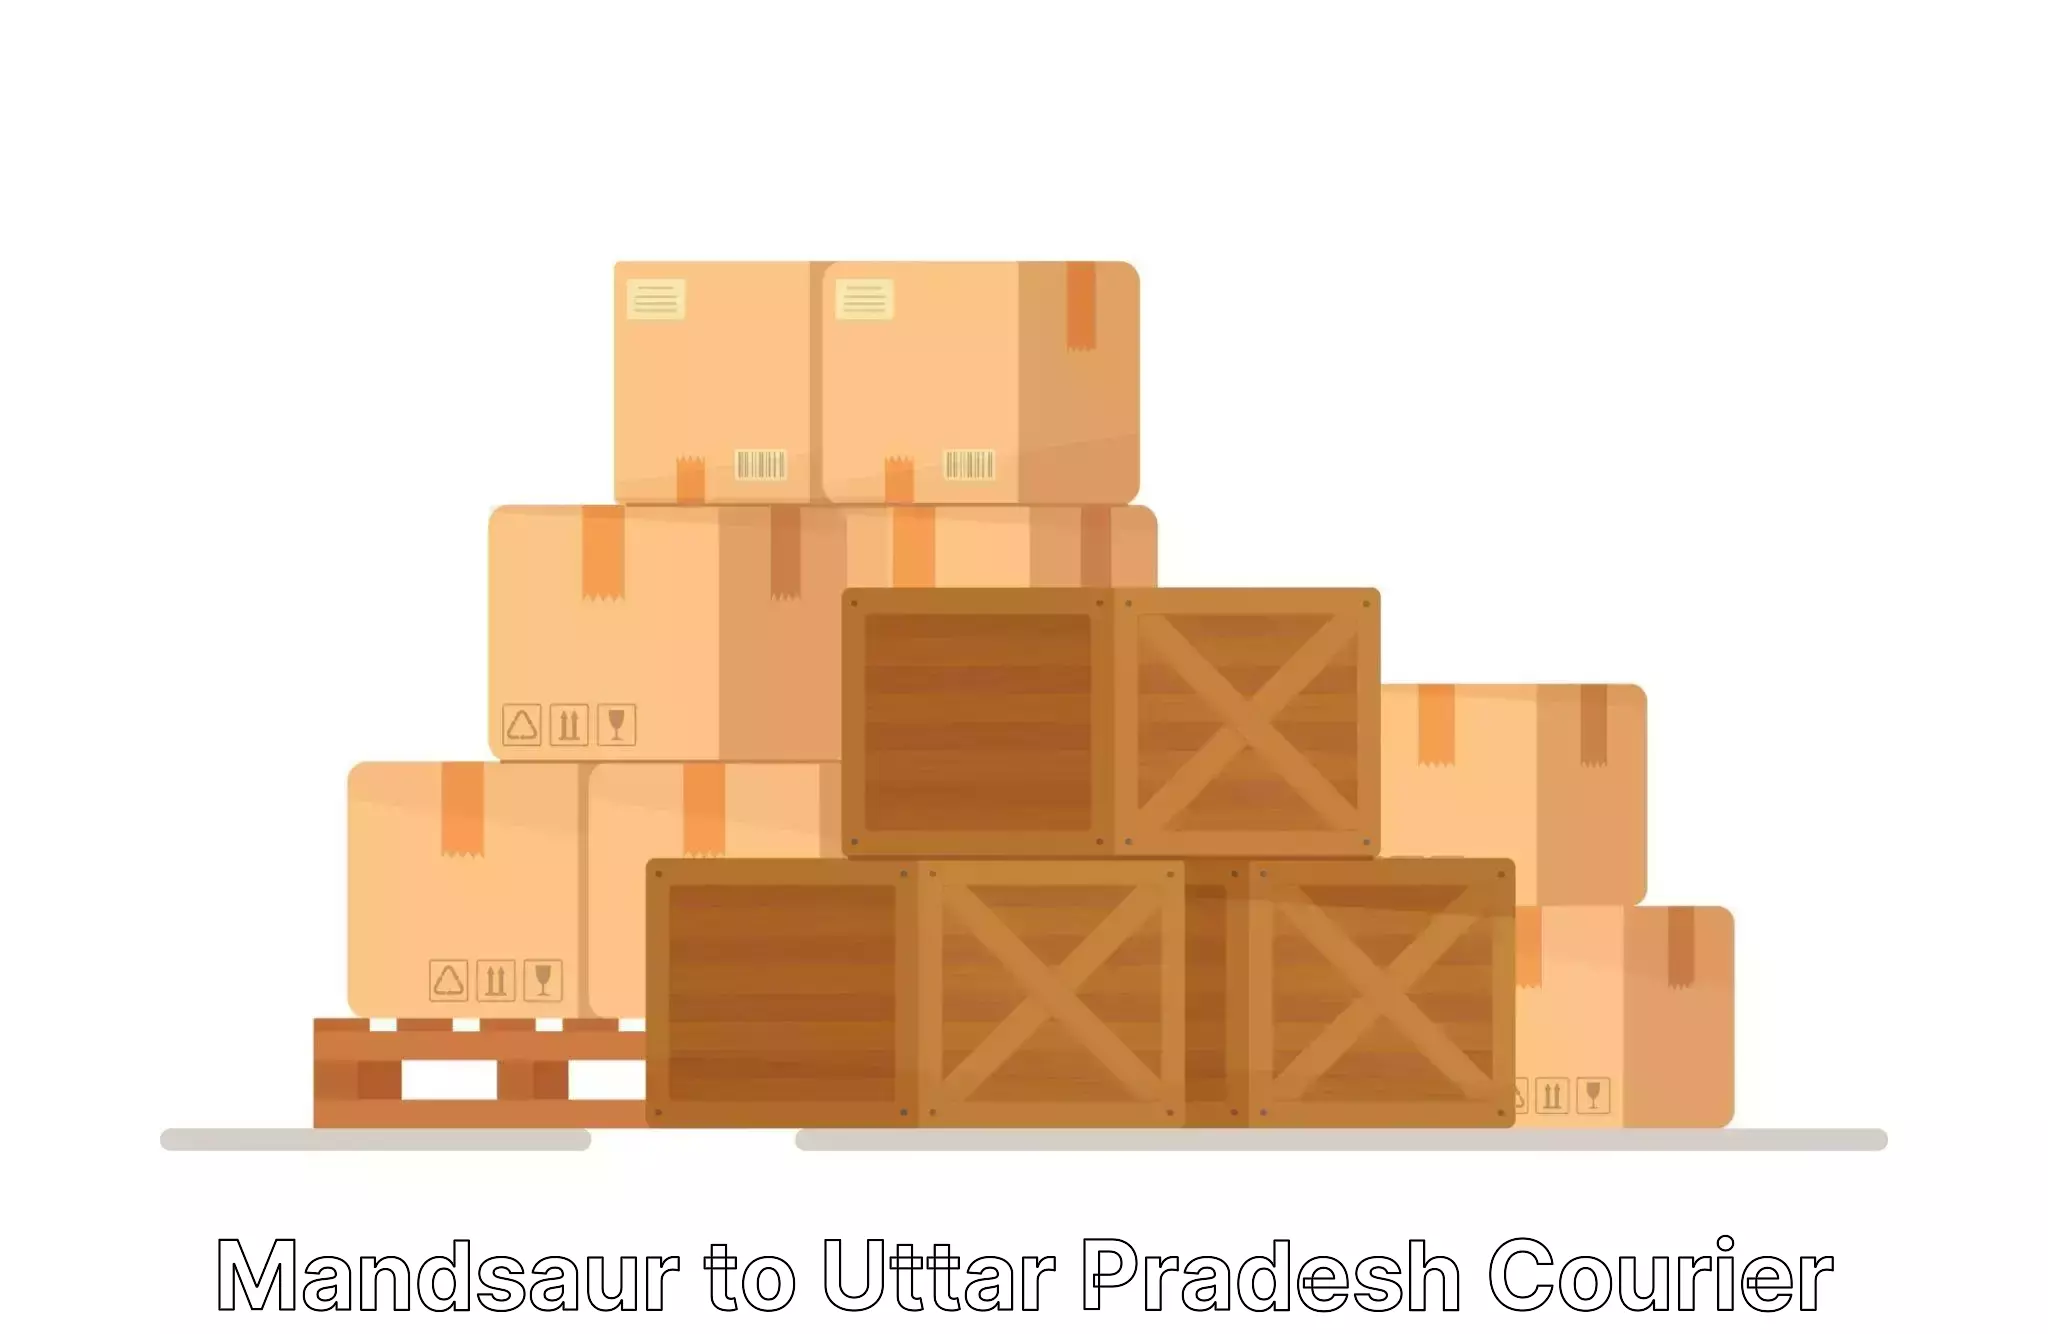 Custom moving solutions Mandsaur to Uttar Pradesh